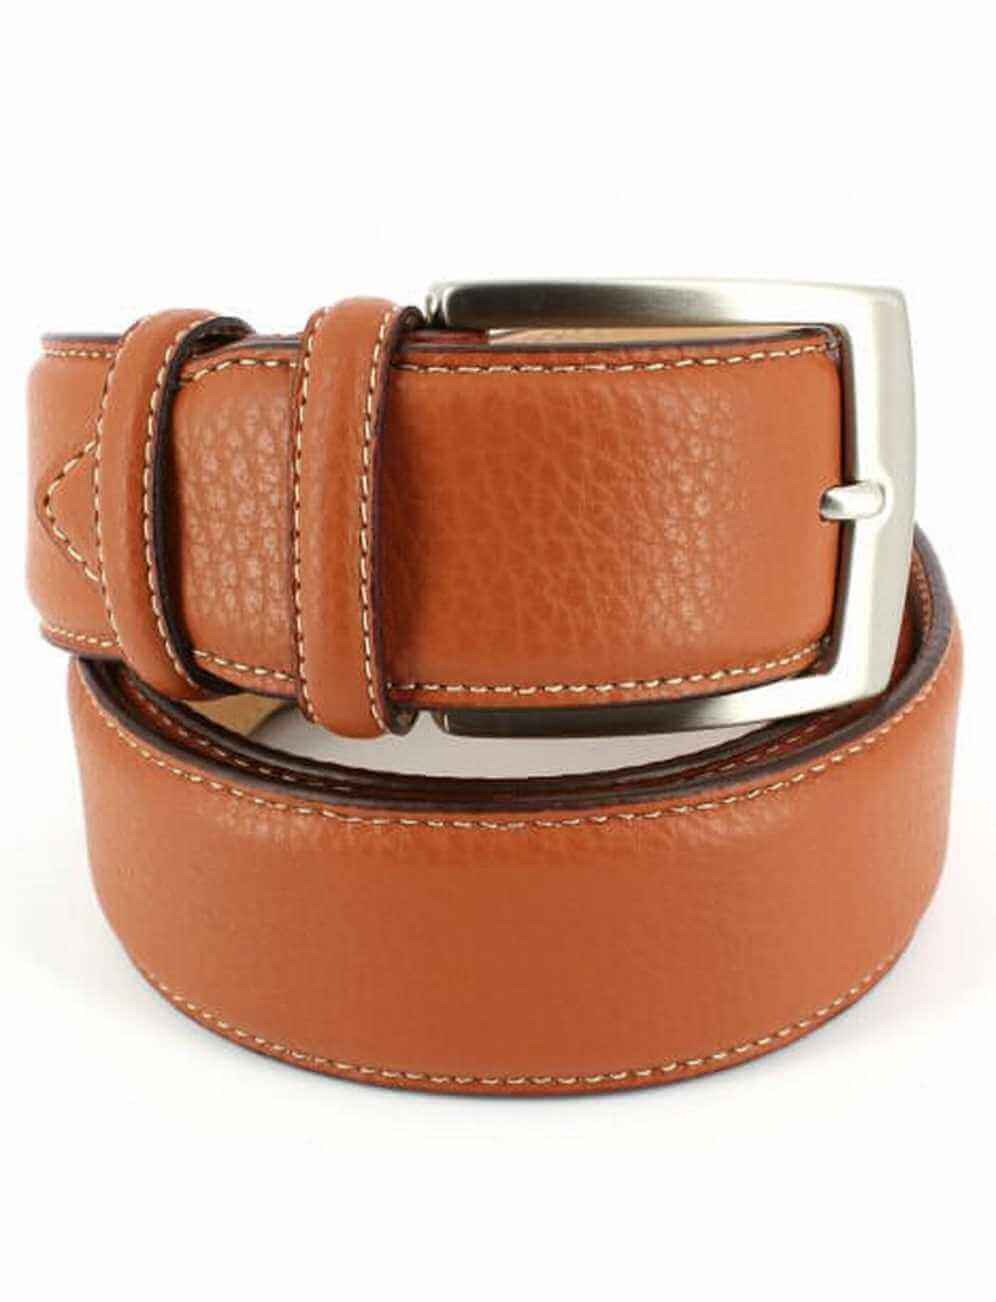 La ceinture en cuir pour Homme : un accessoire indispensable pour